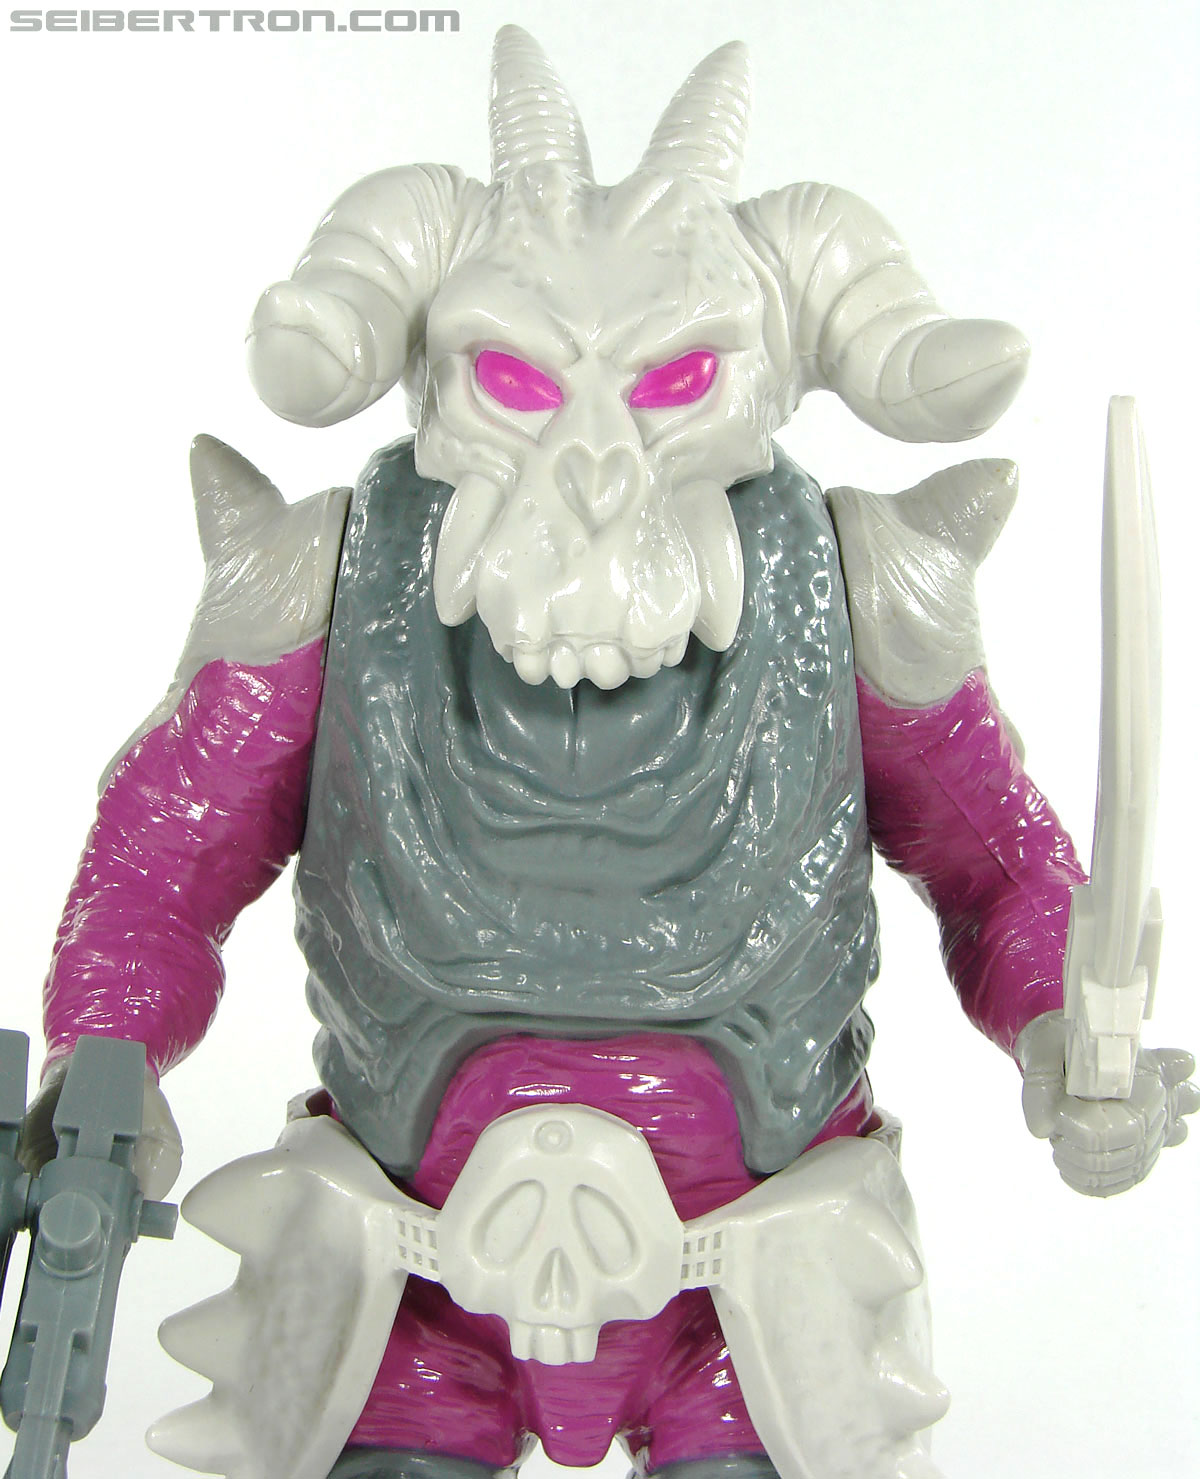 Transformers Super God Masterforce Skullgrin (Dauros) (Image #54 of 196)